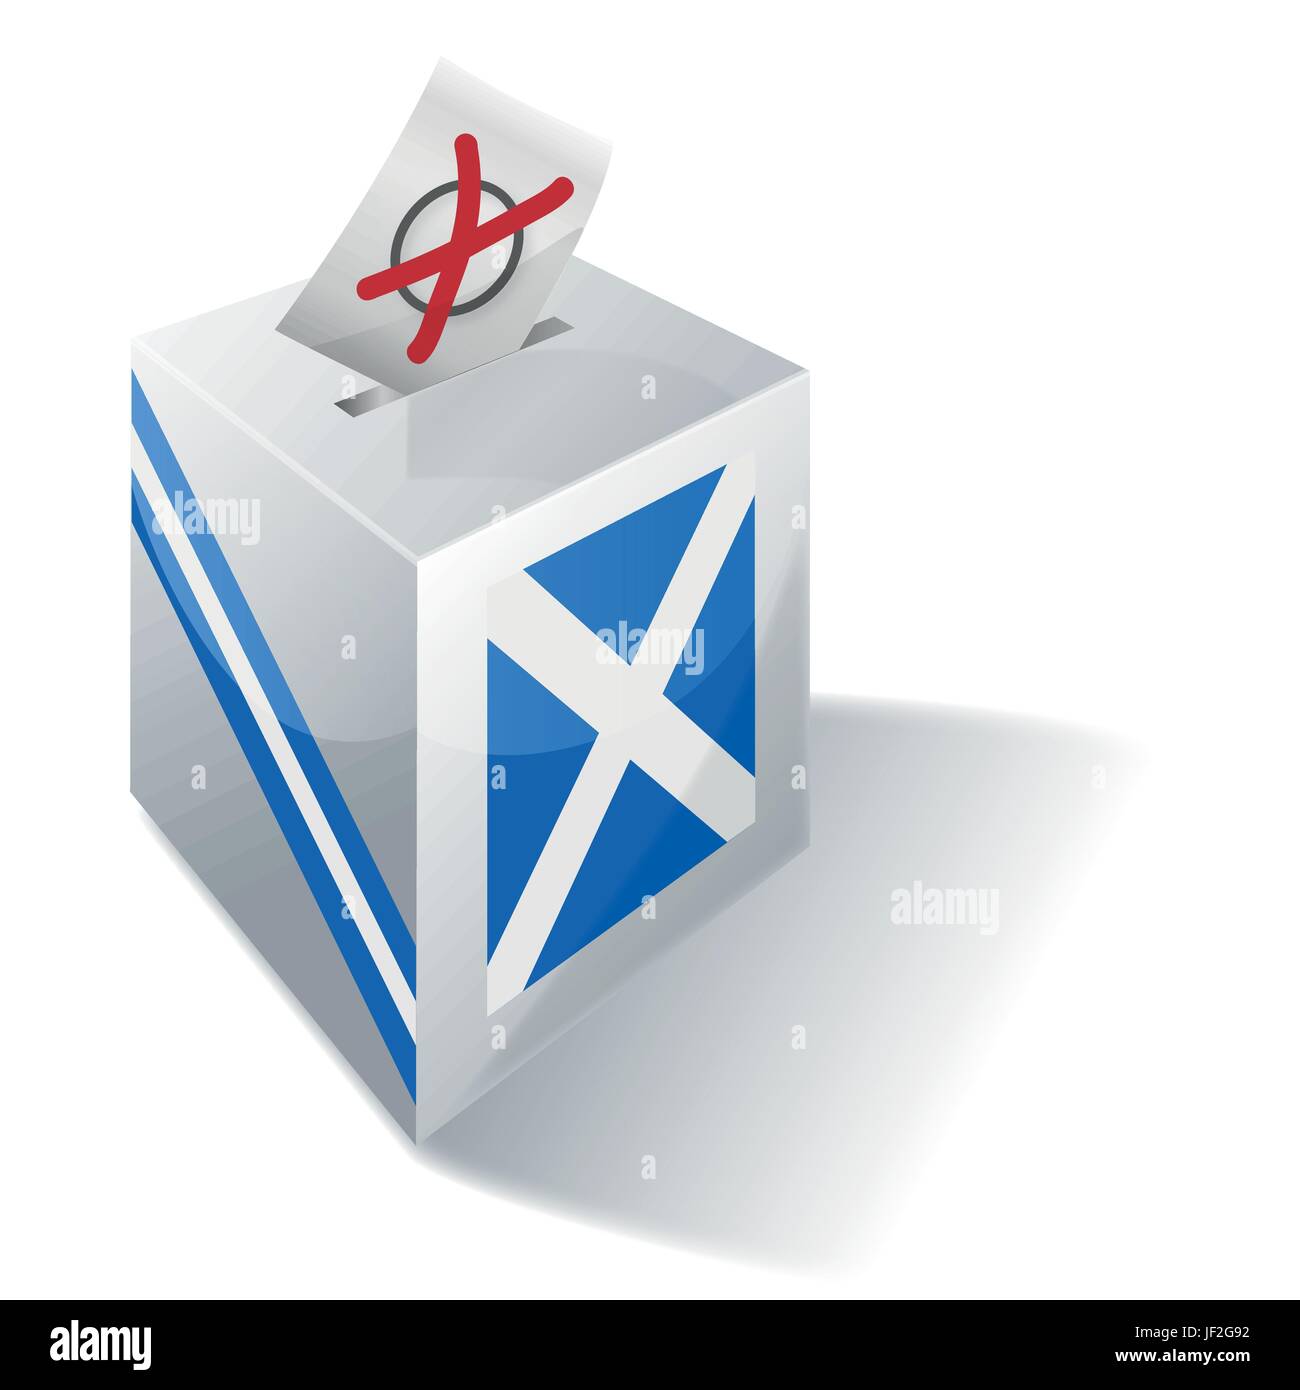 L'indépendance, écossais, Écosse, Édimbourg, gaélique, social, croix, urnes, drapeau, Illustration de Vecteur